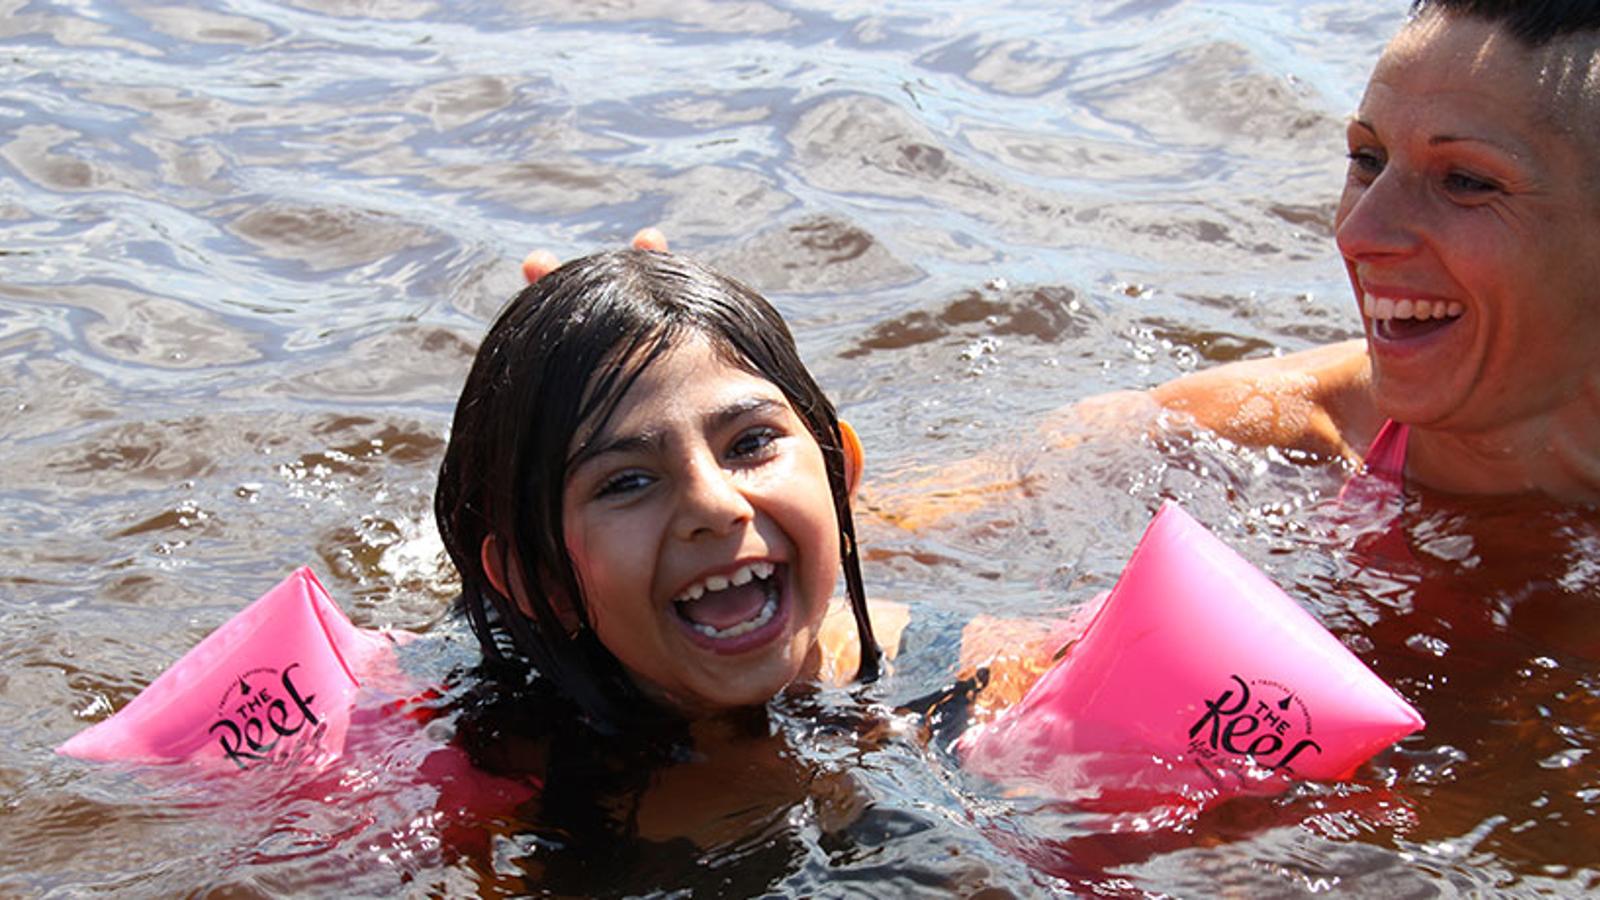 En glad flicka som badar med armpuffar. Bredvid henne badar en kvinna som ler mot flickan.